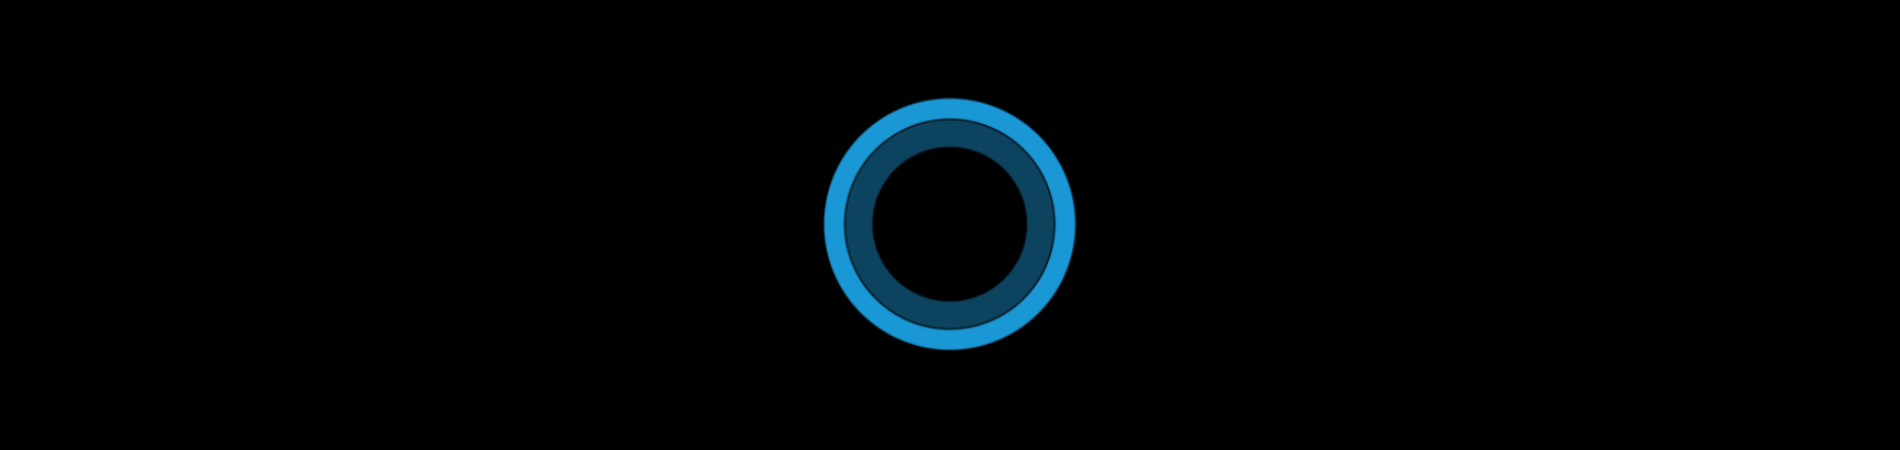 upcoming-features-Cortana_logo_d